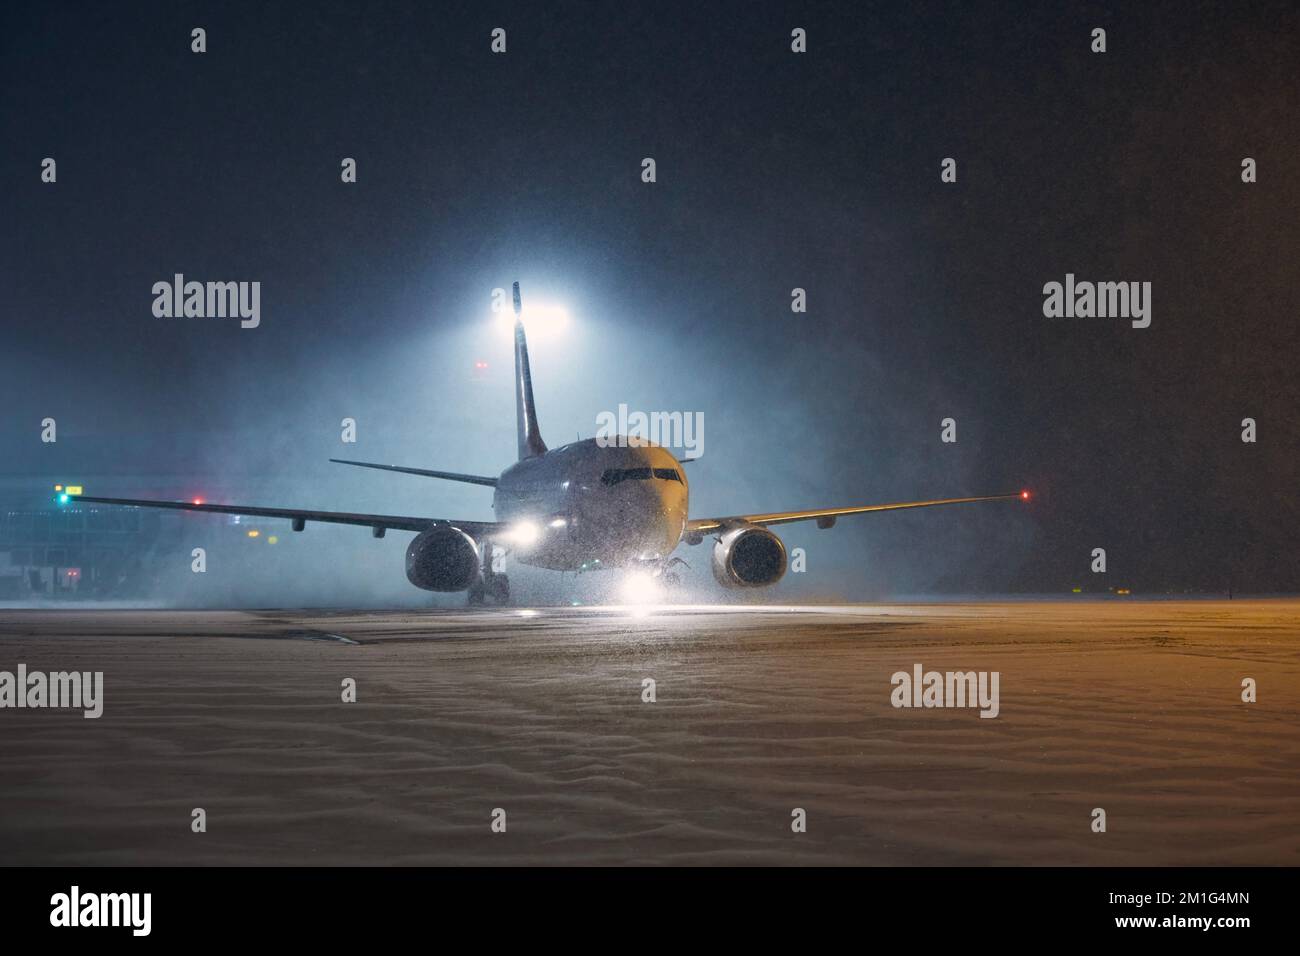 Winternacht am Flughafen. Das Flugzeug rollt bei starkem Schneefall zur Startbahn. Stockfoto